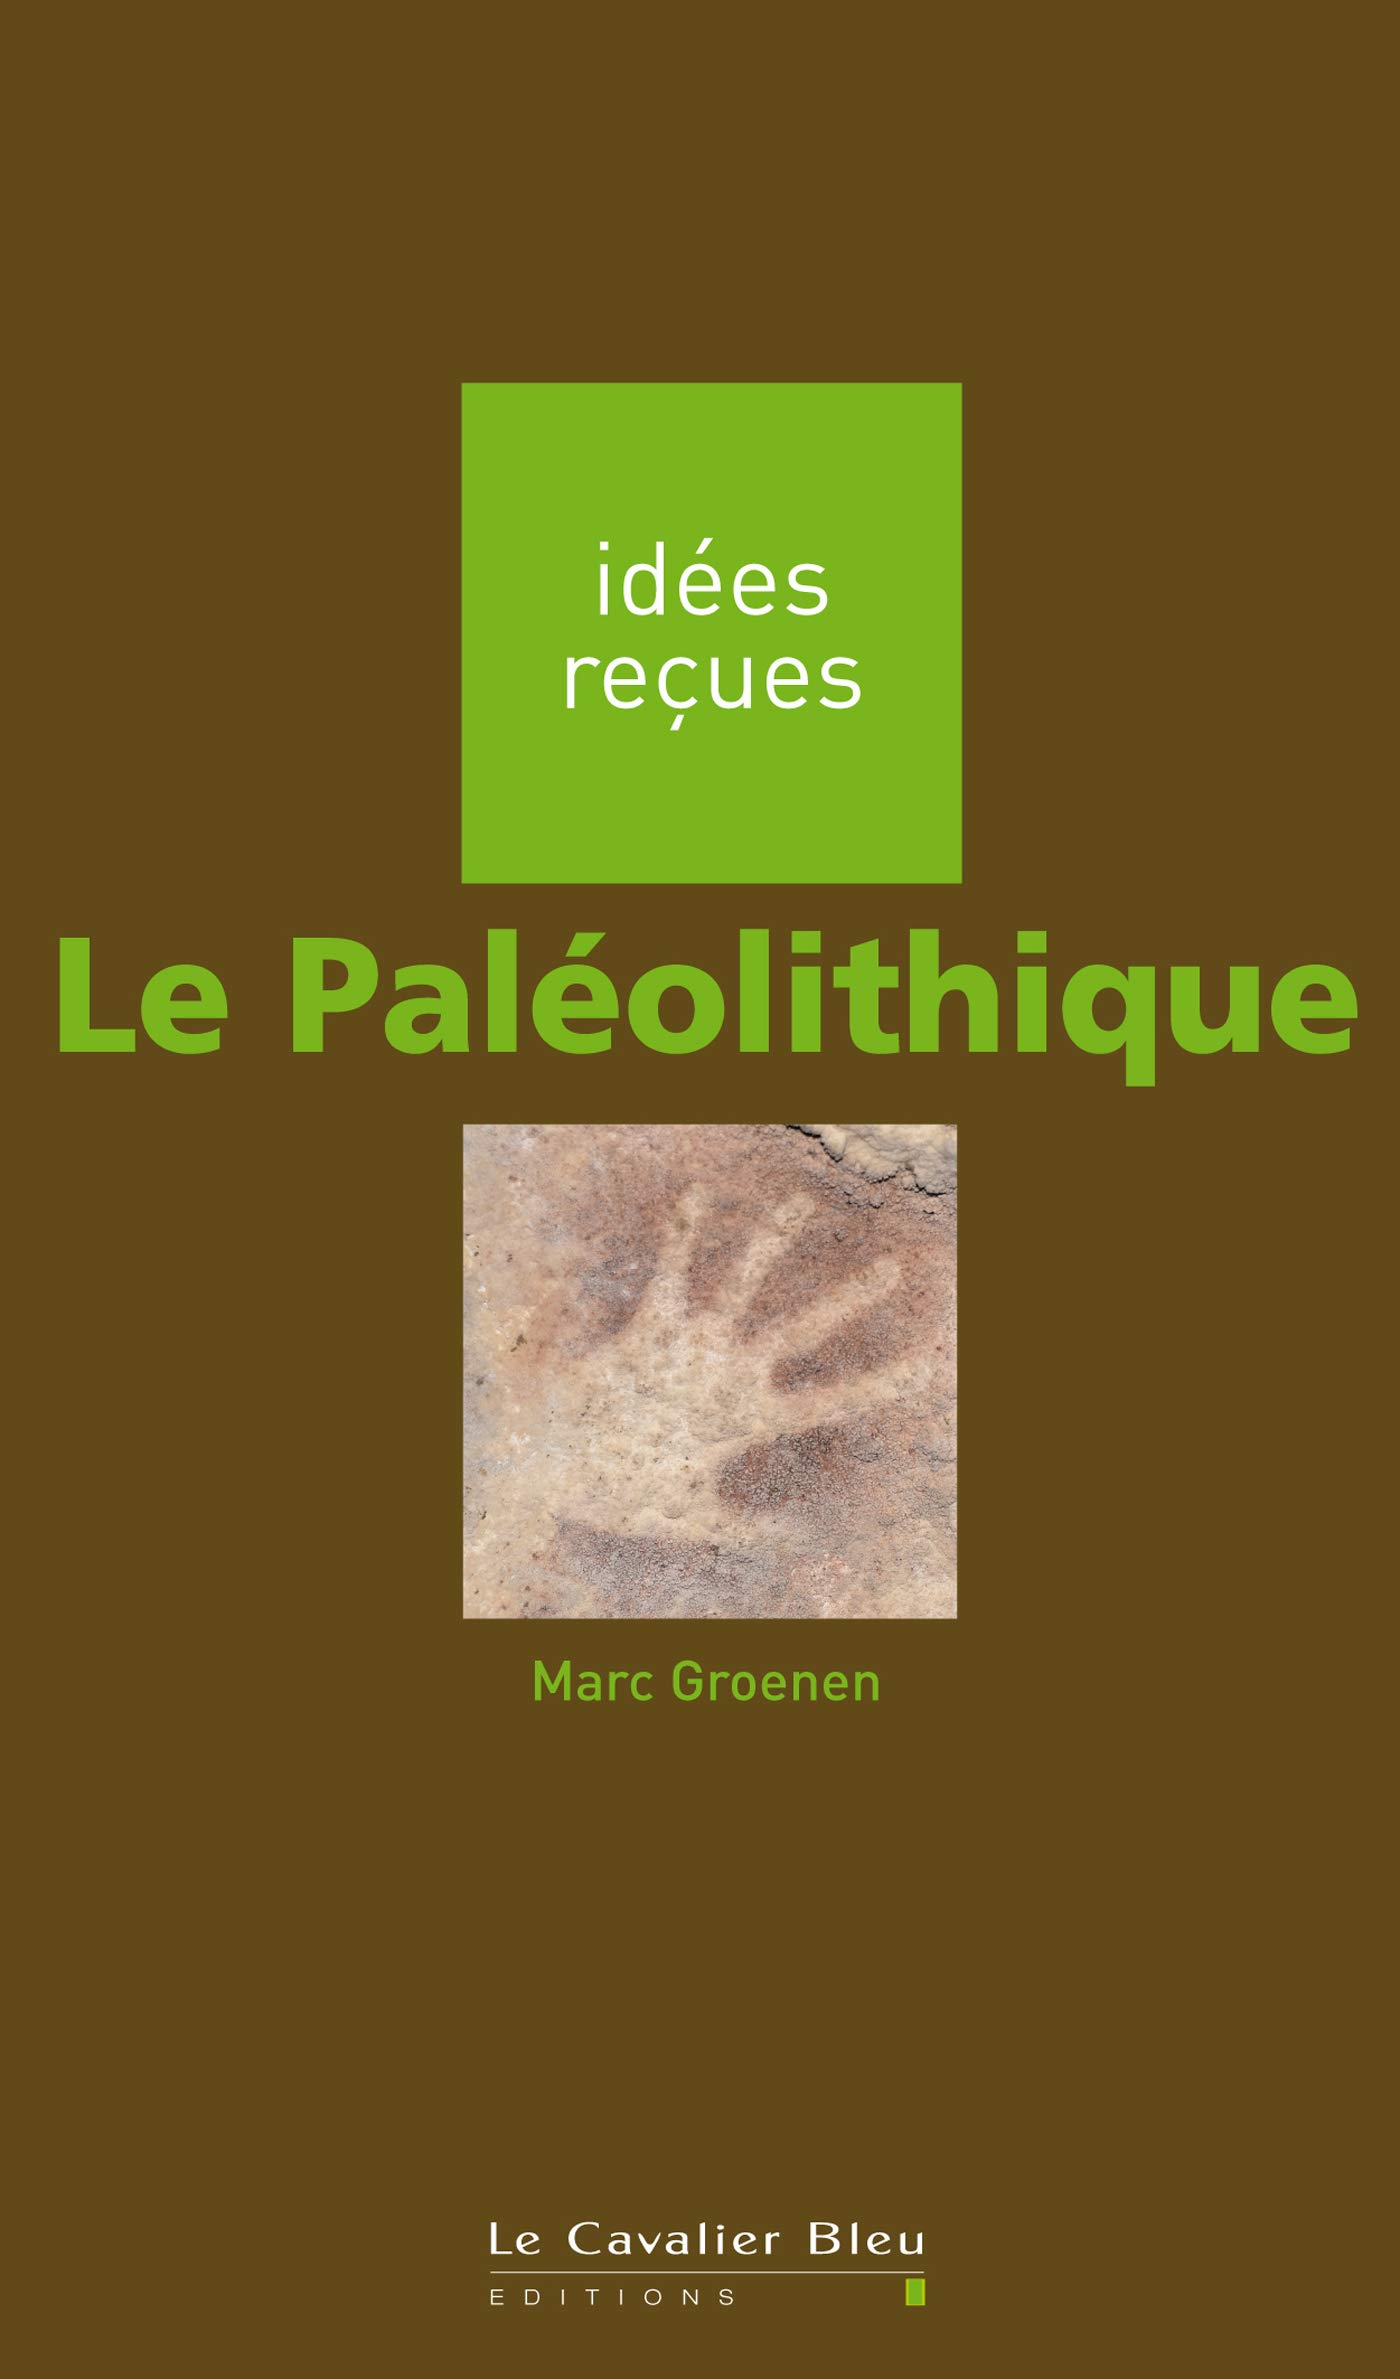 Le Paléolithique - Idées reçues